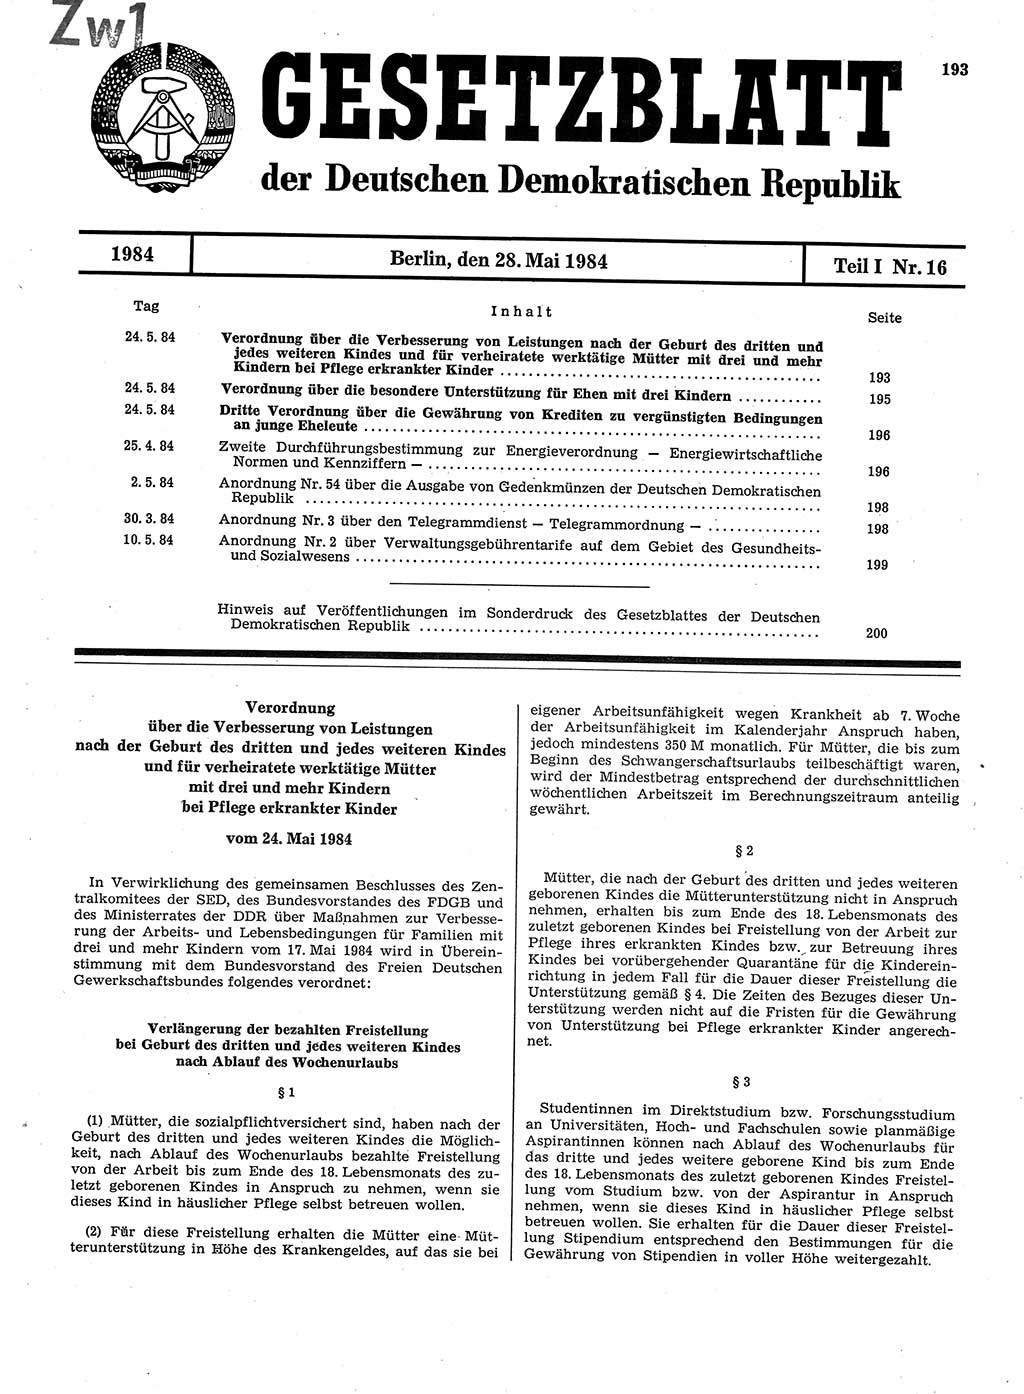 Gesetzblatt (GBl.) der Deutschen Demokratischen Republik (DDR) Teil Ⅰ 1984, Seite 193 (GBl. DDR Ⅰ 1984, S. 193)